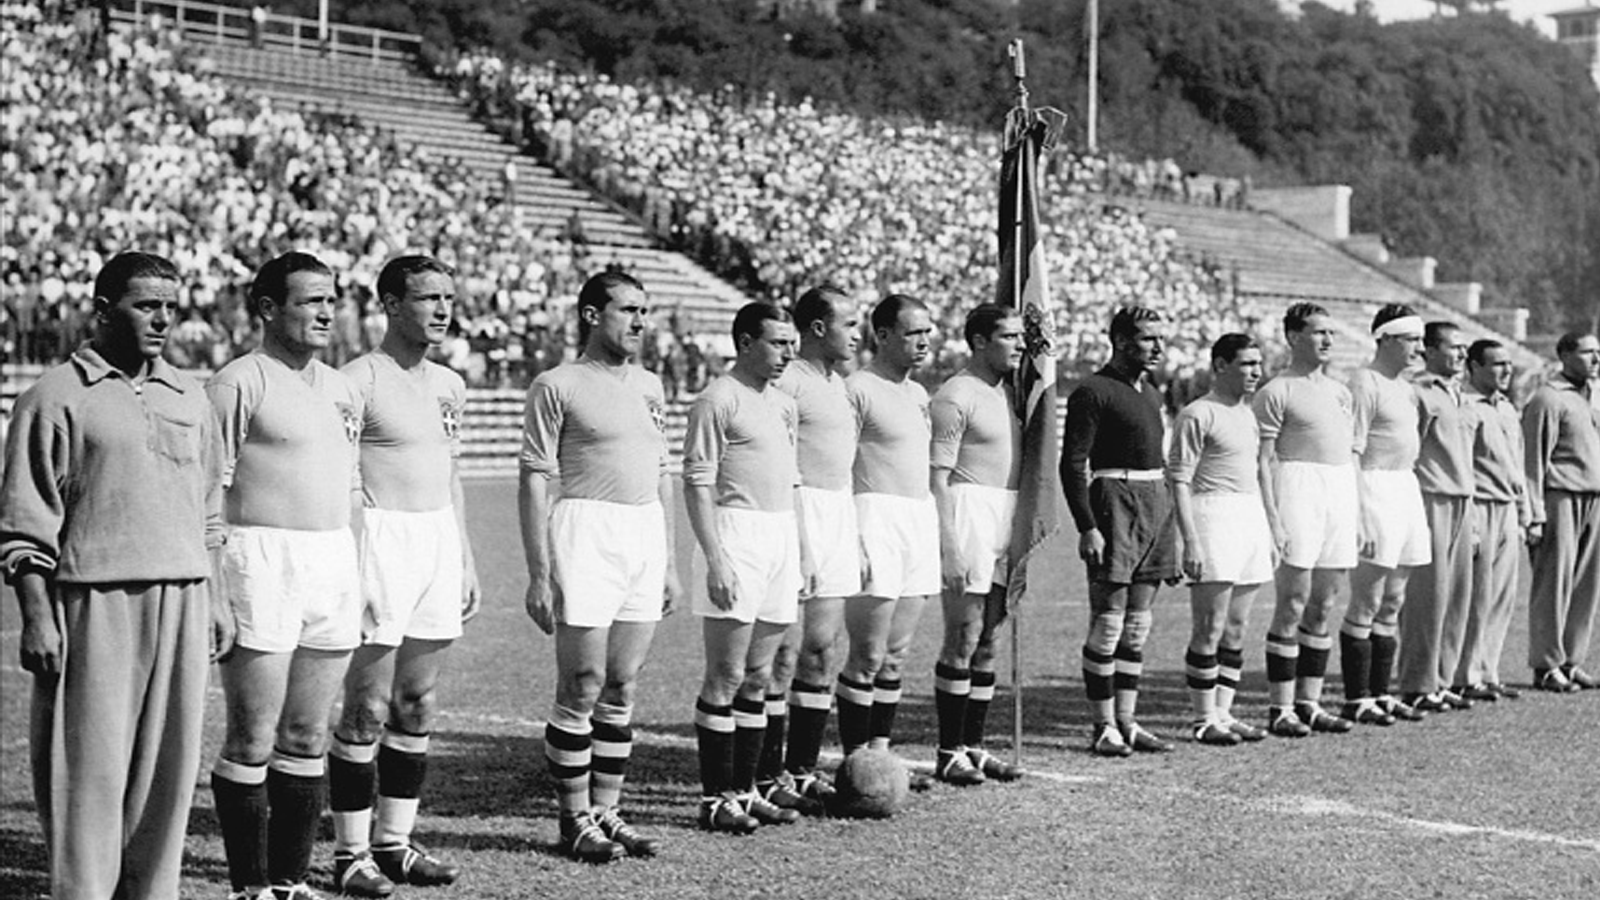 منتخب إيطاليا في 10 حزيران/يونيو 1934 قبل نهائي كأس العالم ضد تشيكوسلوفاكيا في روما